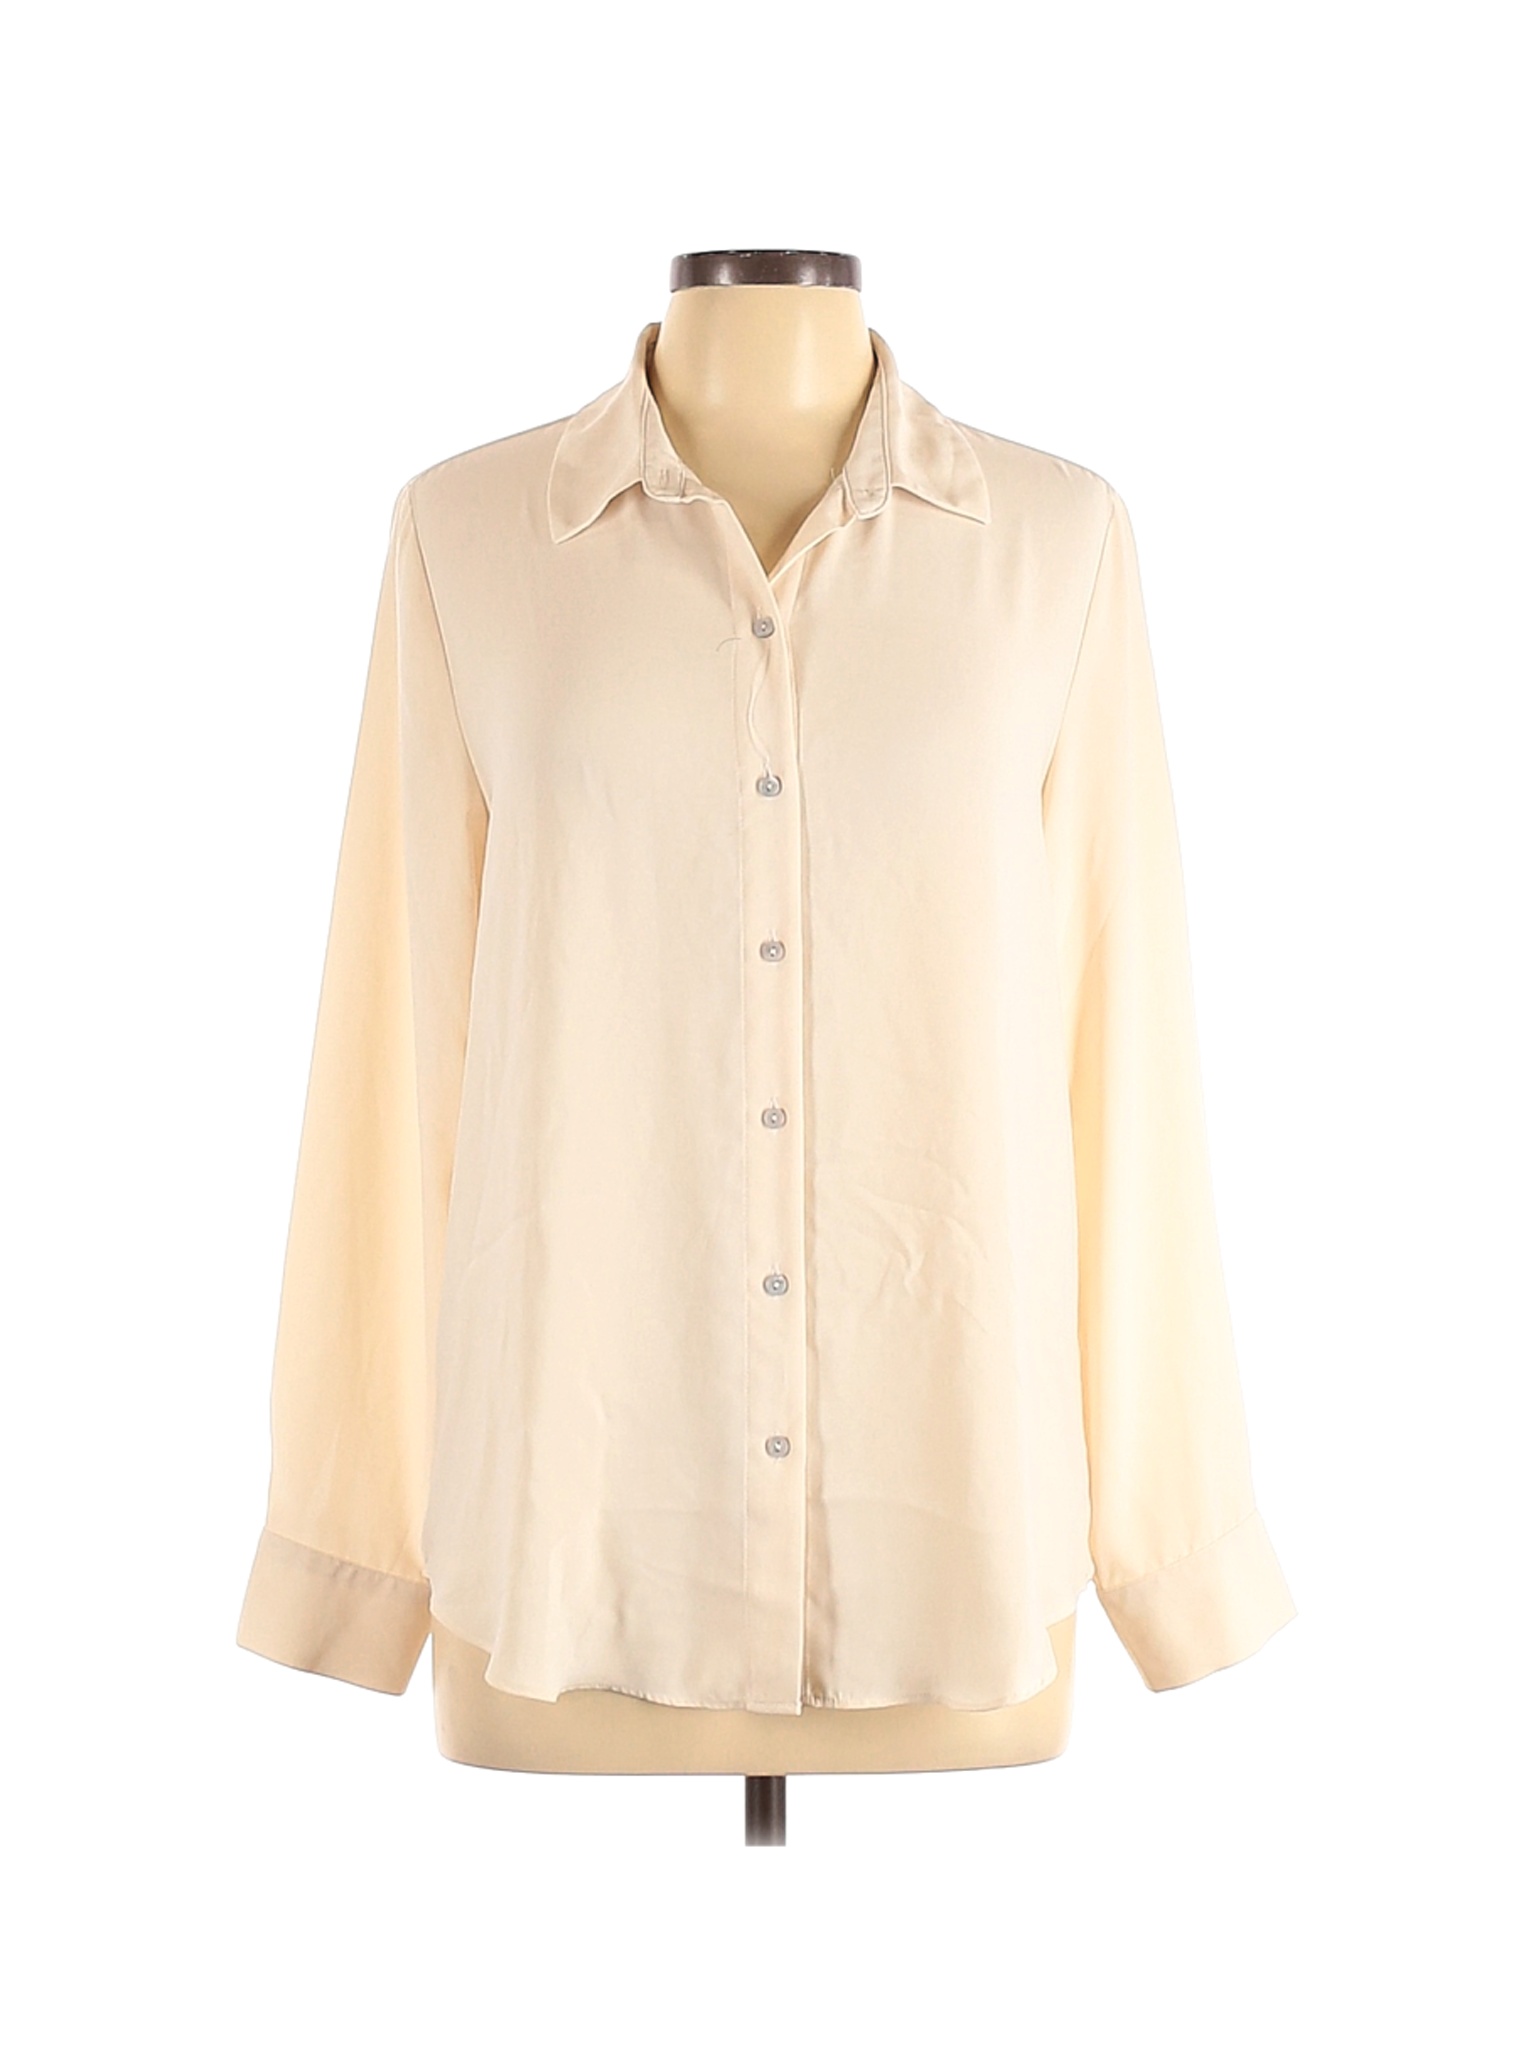 Rachel Zoe Women Brown Long Sleeve Blouse L | eBay